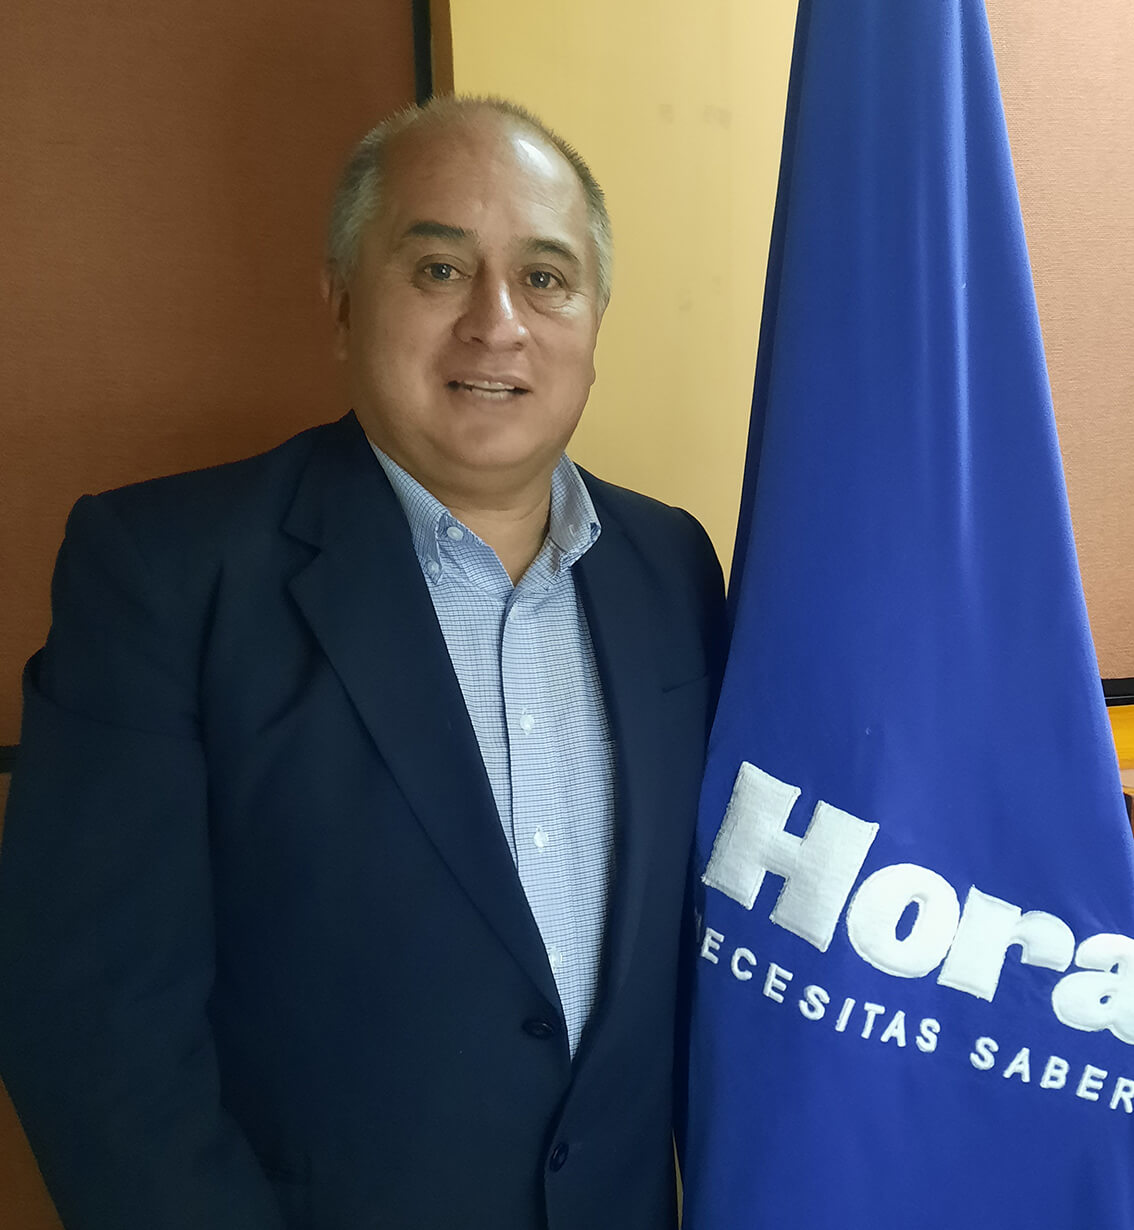 Francisco Suárez Abril es el candidato a la Prefectura de Tungurahua por la ID.